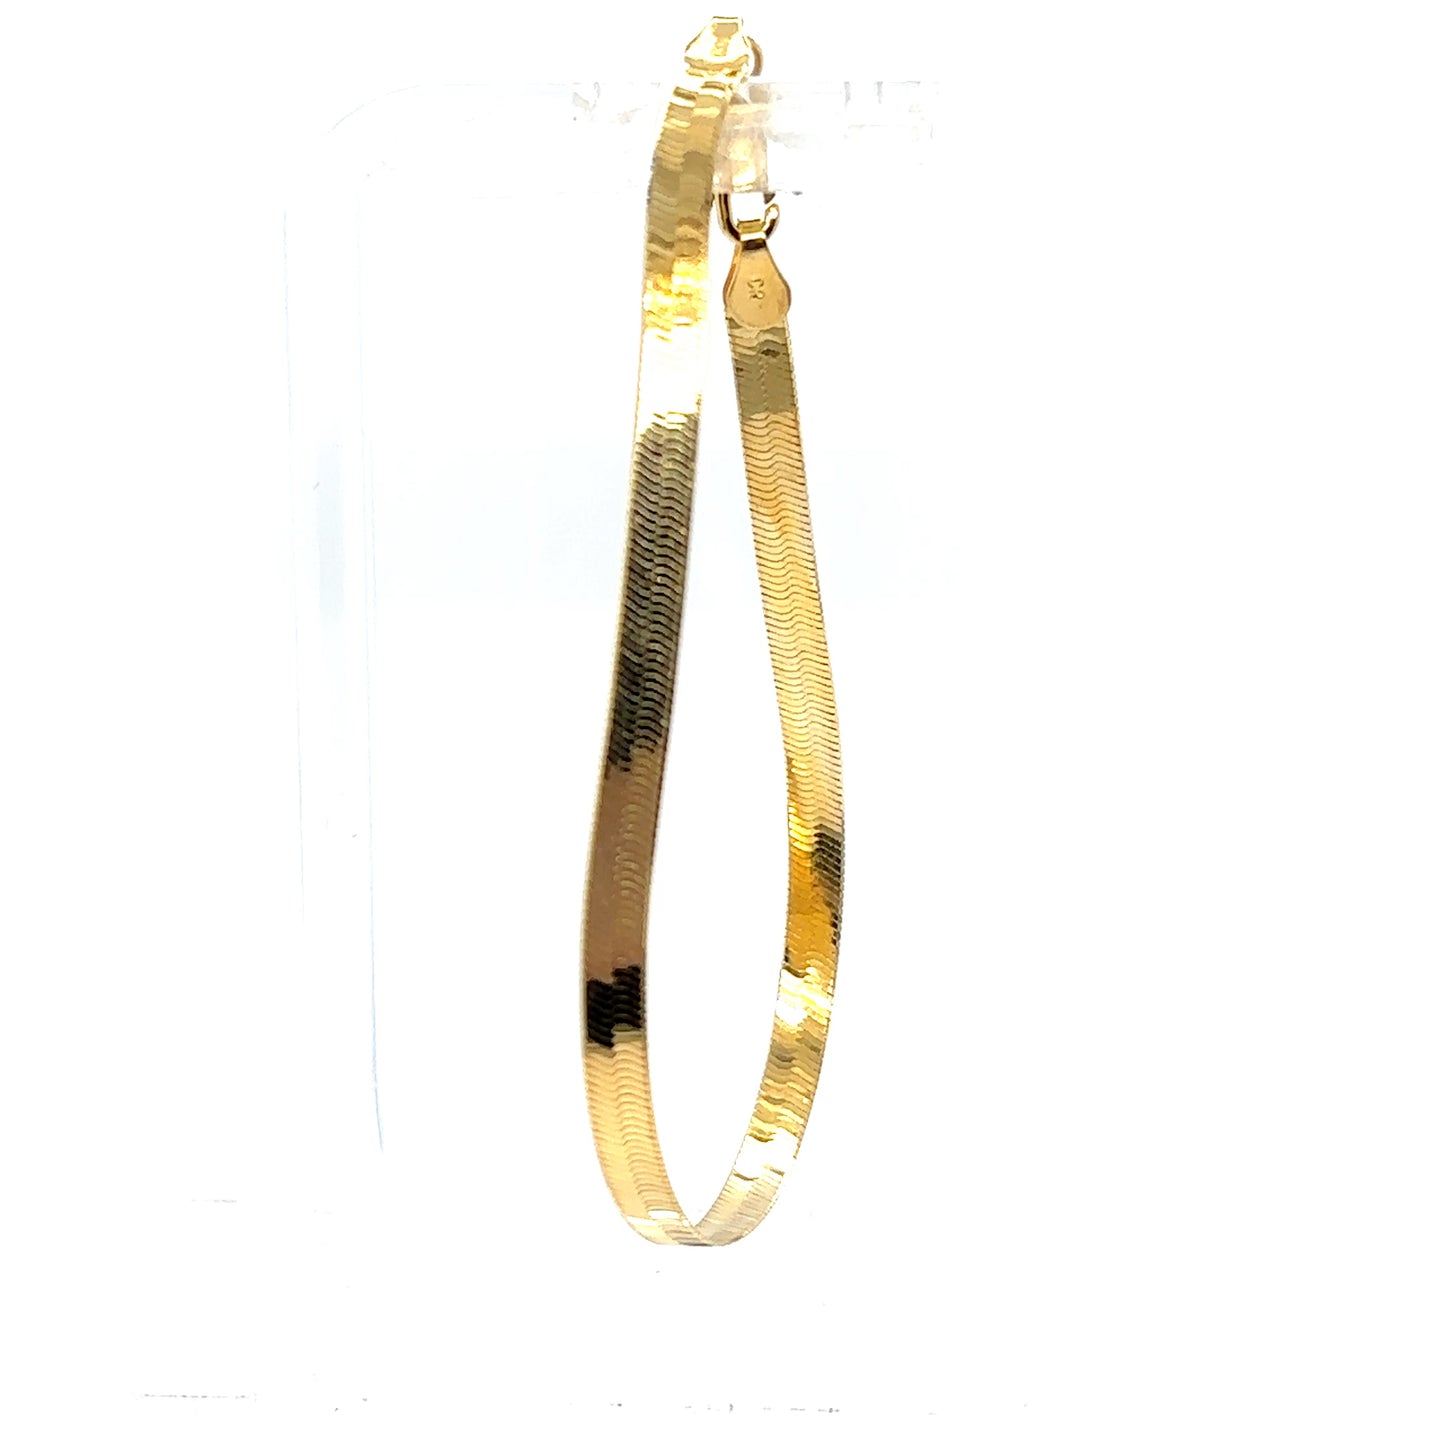 14k Gold Herringbone Bracelet